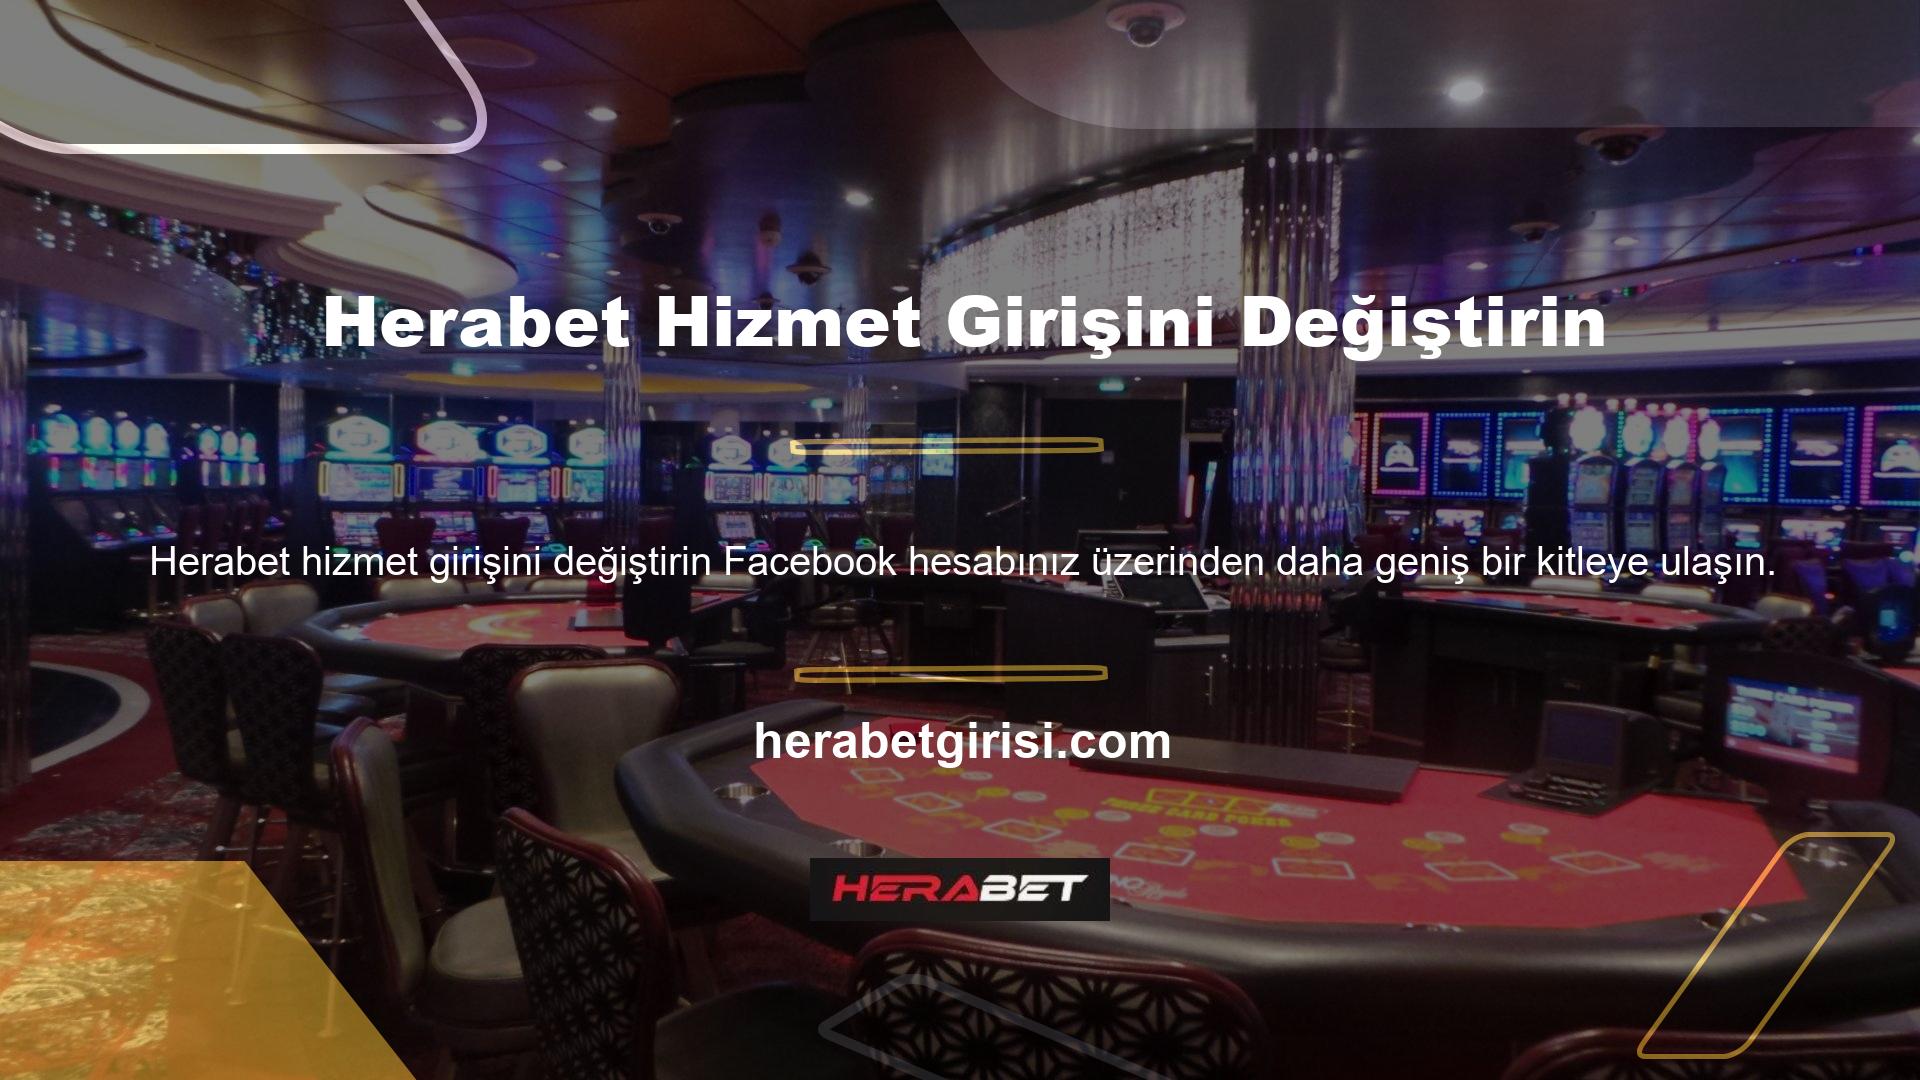 Türk casino ve oyun tutkunlarına nasıl ulaşılır? Facebook'un milyonlarca kullanıcısı var